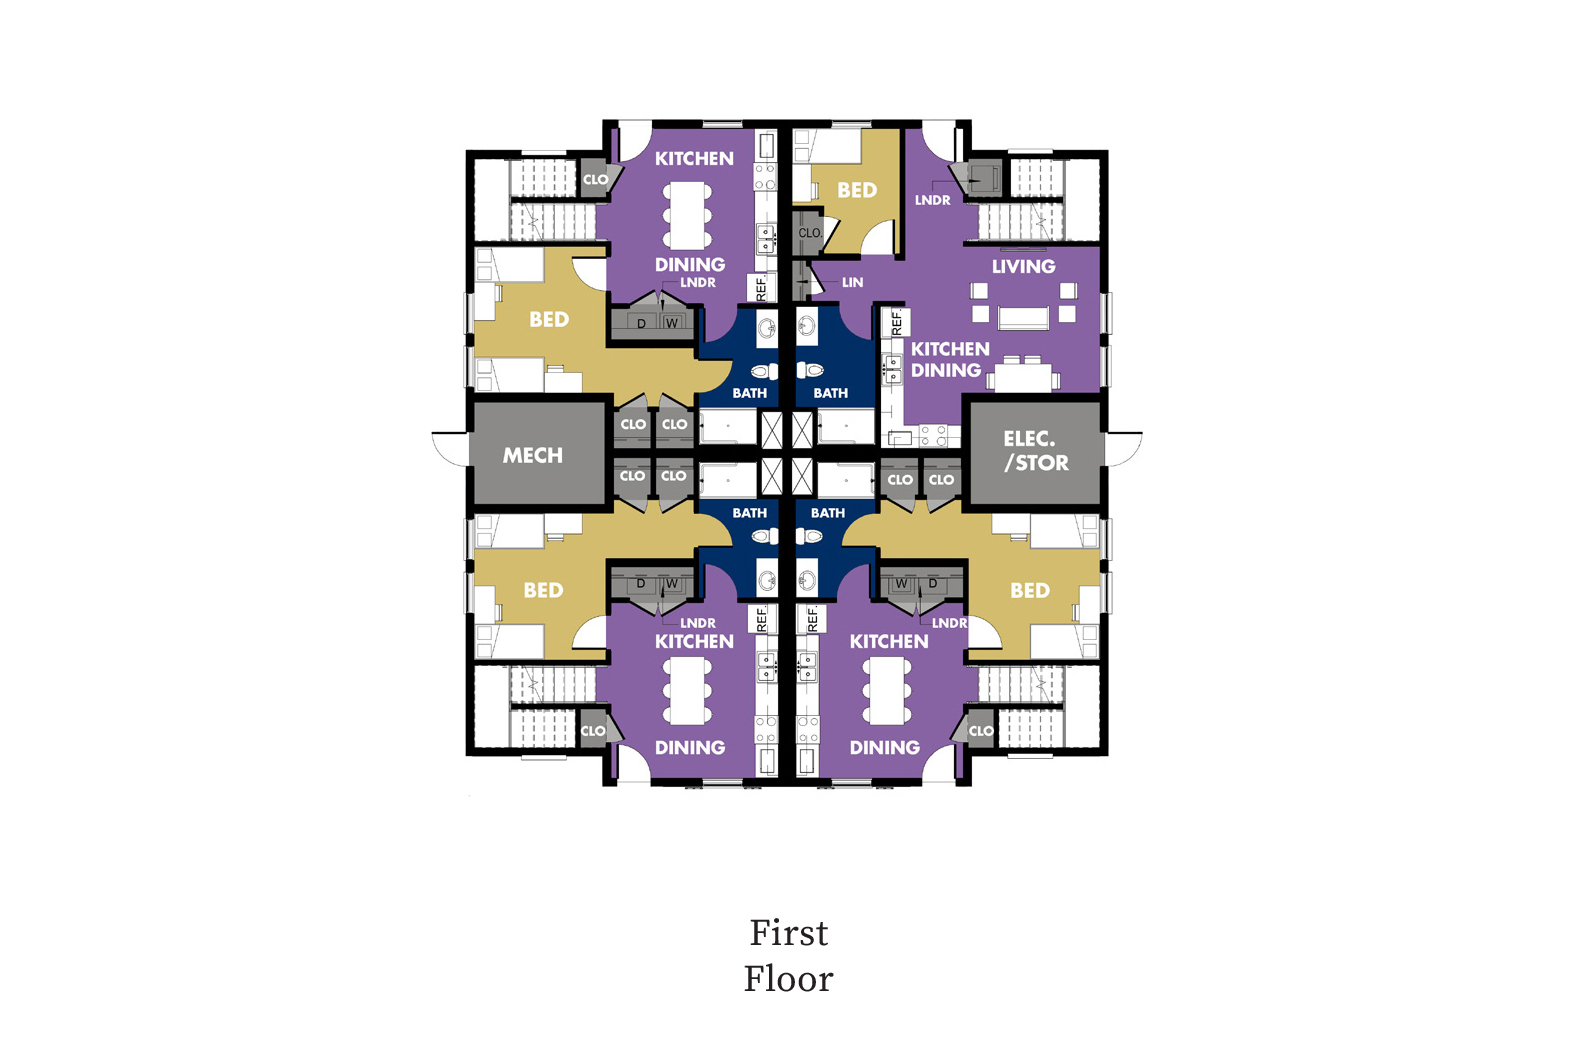 floor plan of first floor of townhome